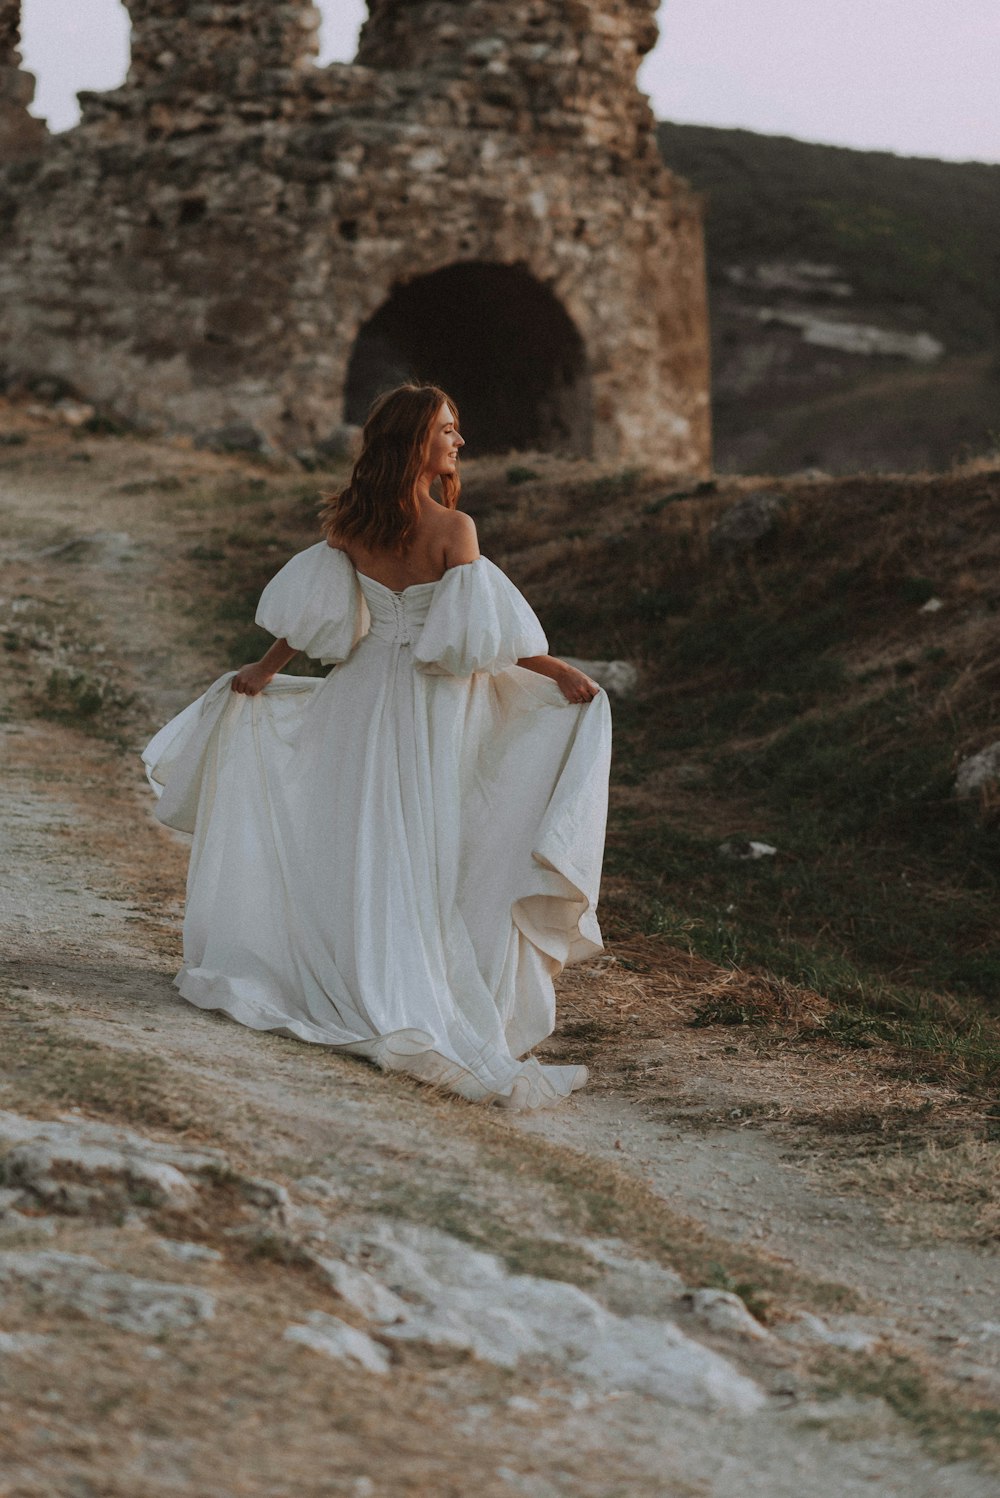 Une femme en robe blanche marchant sur un chemin de terre